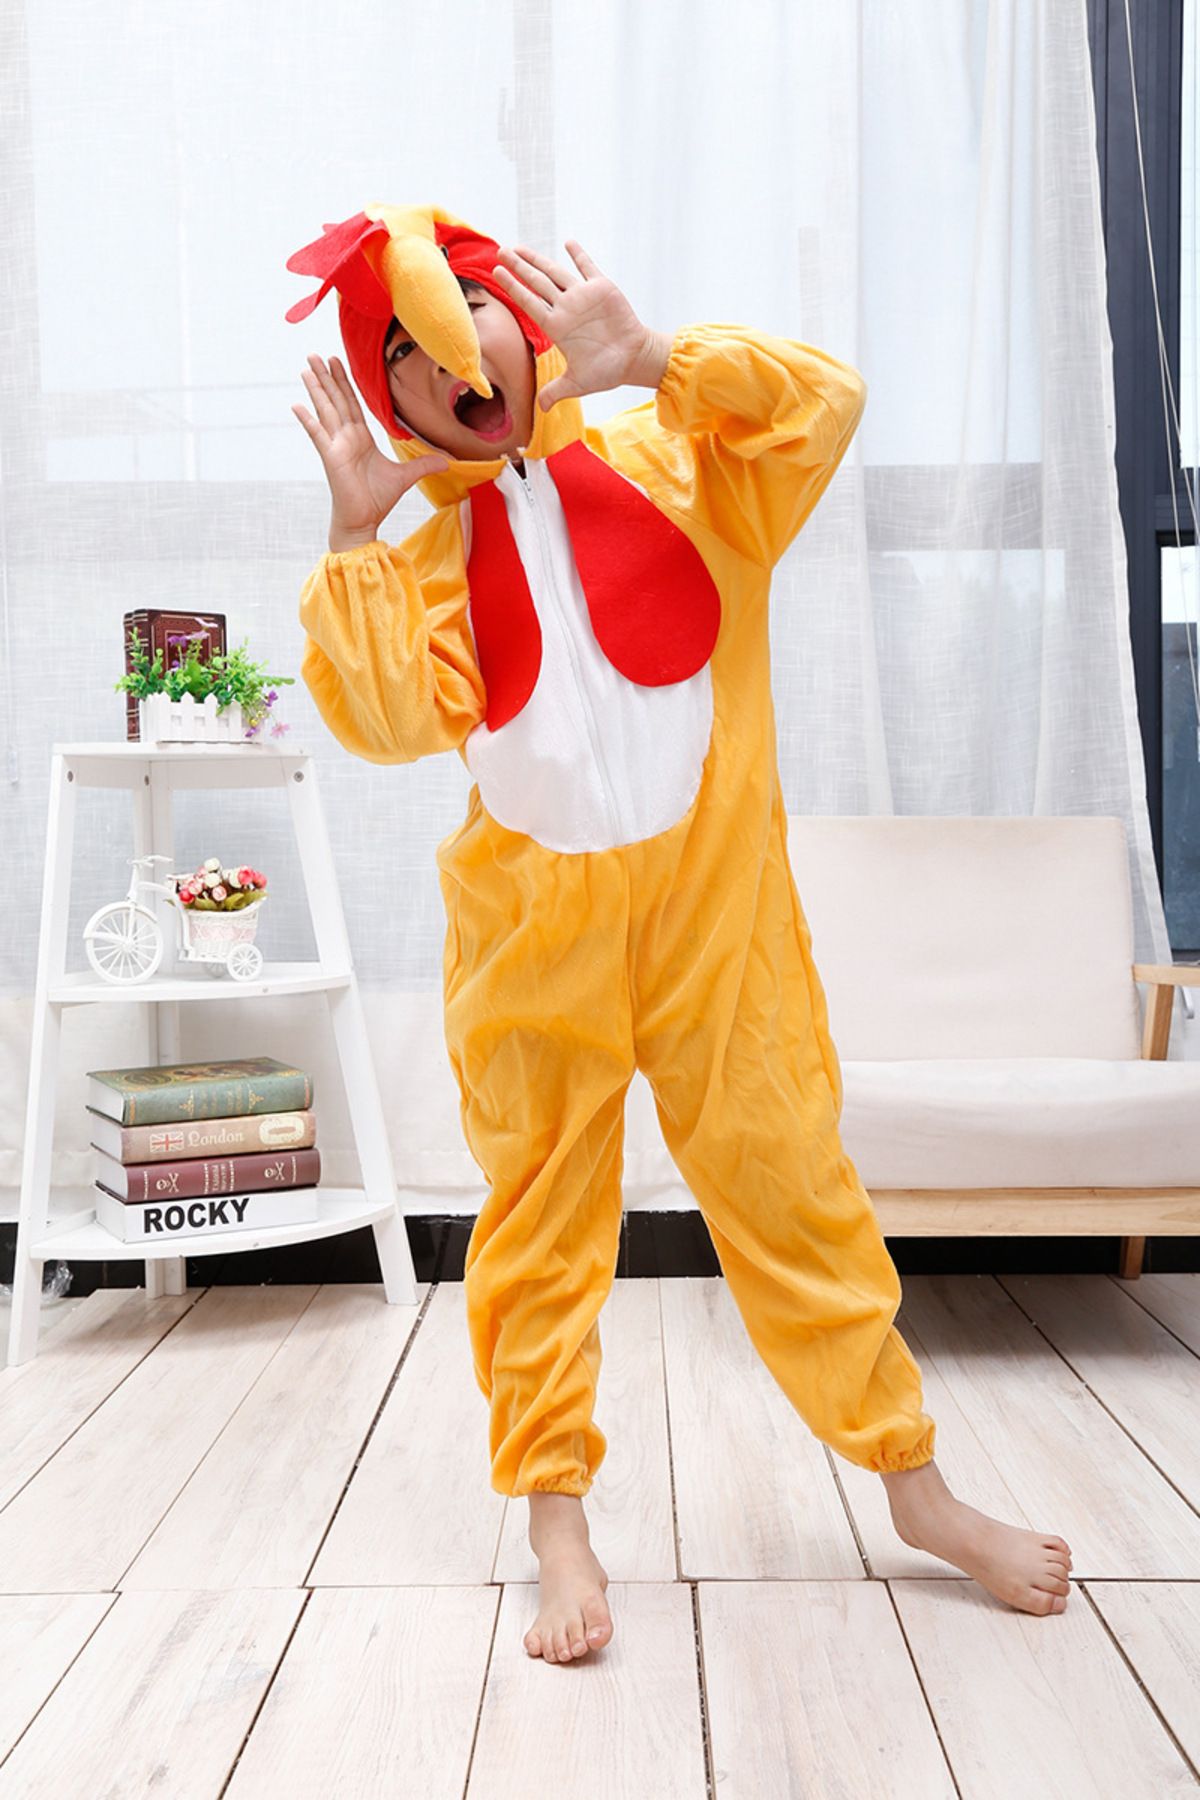 Skygo Çocuk Horoz Kostümü - Tavuk Kostümü 4-5 Yaş 100 cm